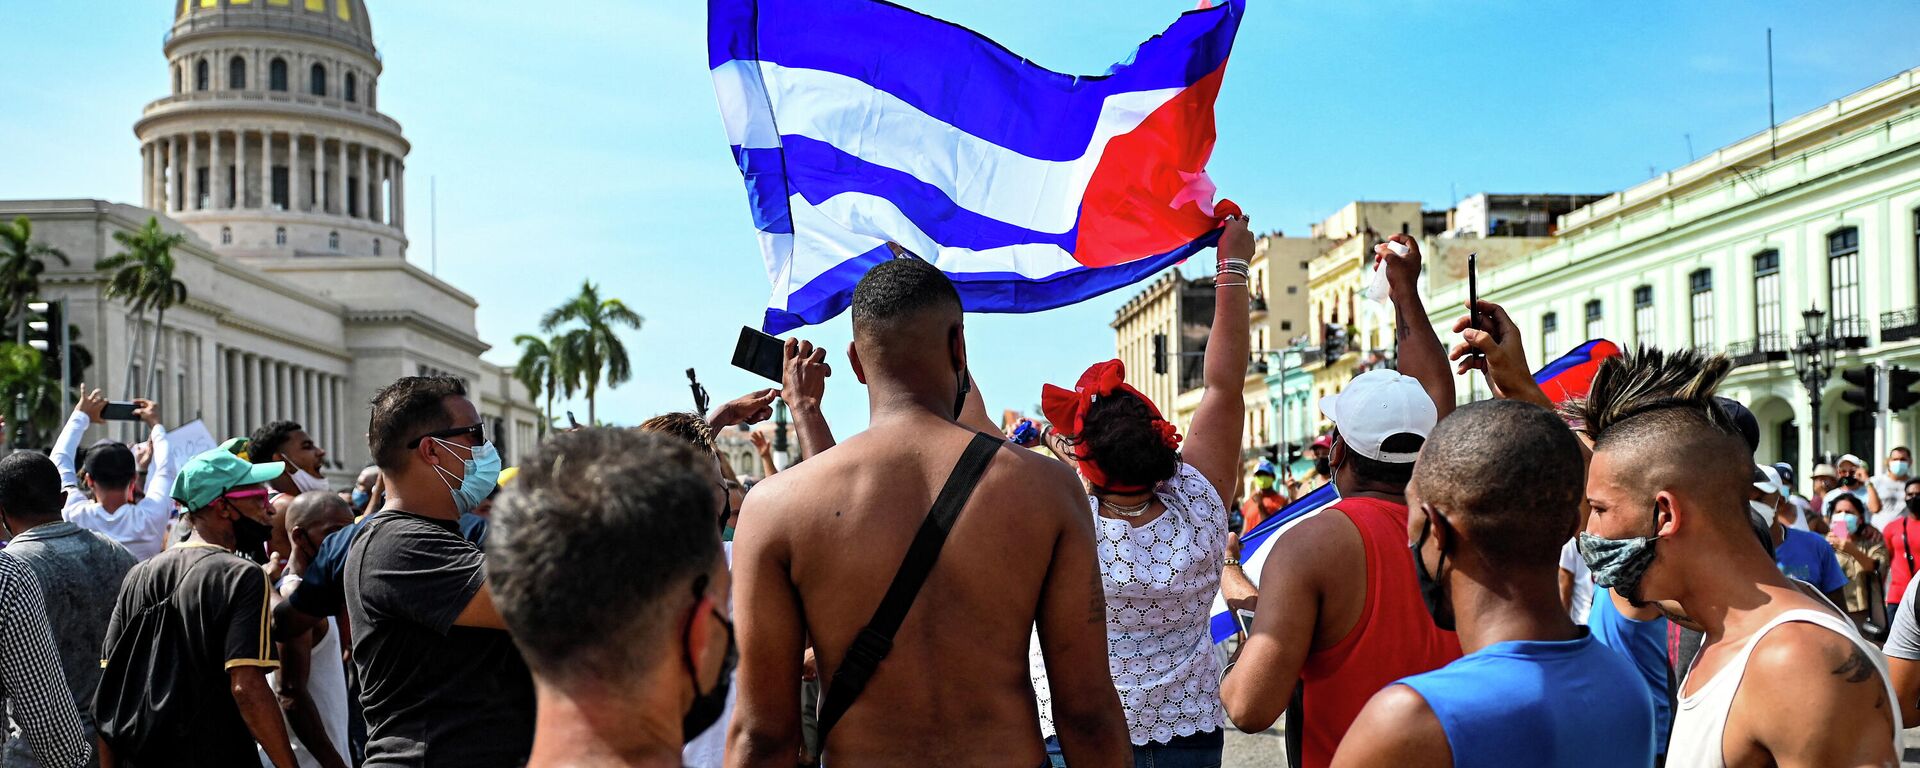 Protestas en la Habana, Cuba - Sputnik Mundo, 1920, 15.07.2021